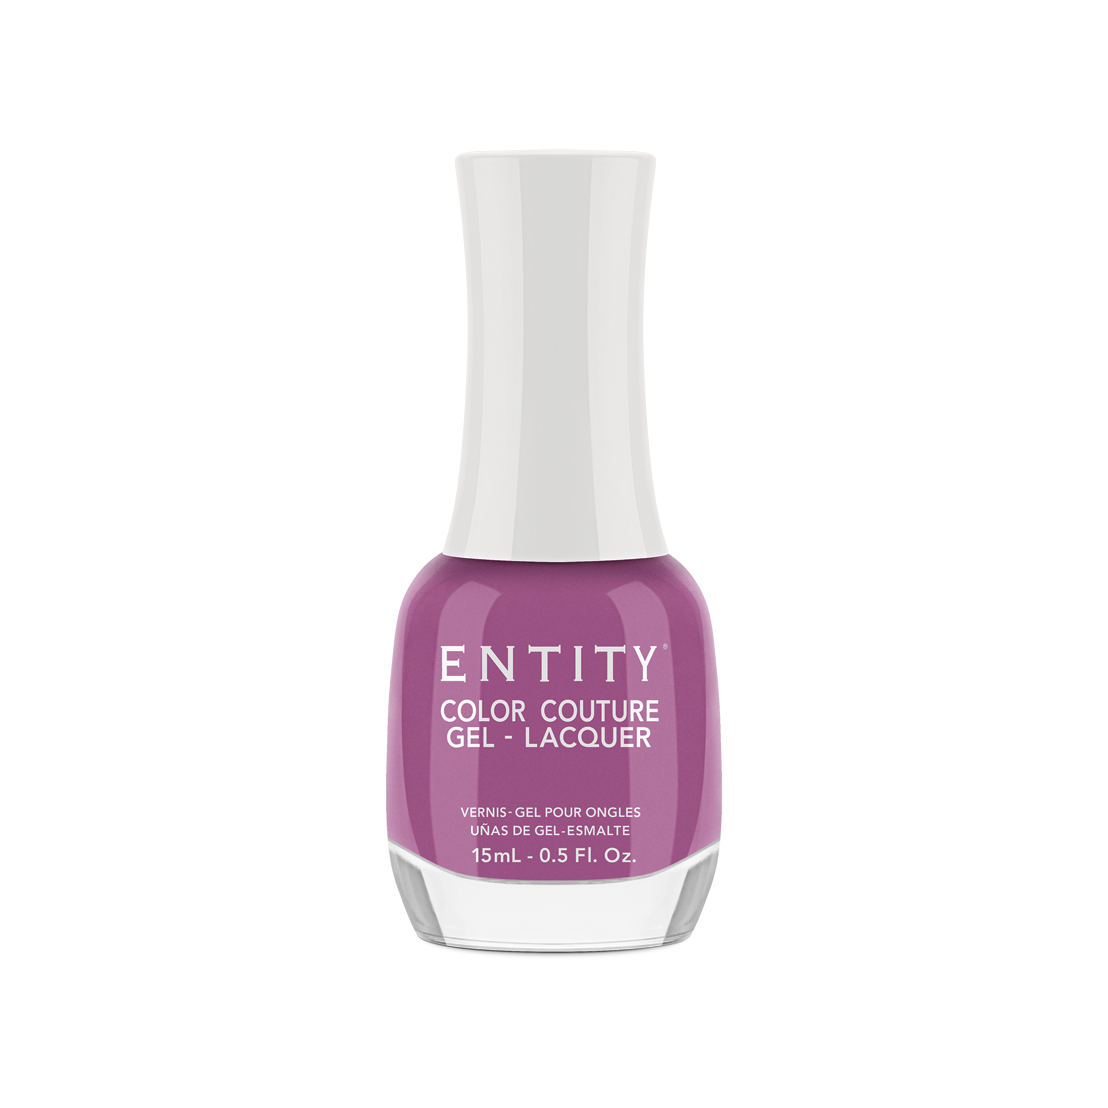 Entity Gel Lacquer - Beauty Ritual 15 mL/0.5 Fl. Oz